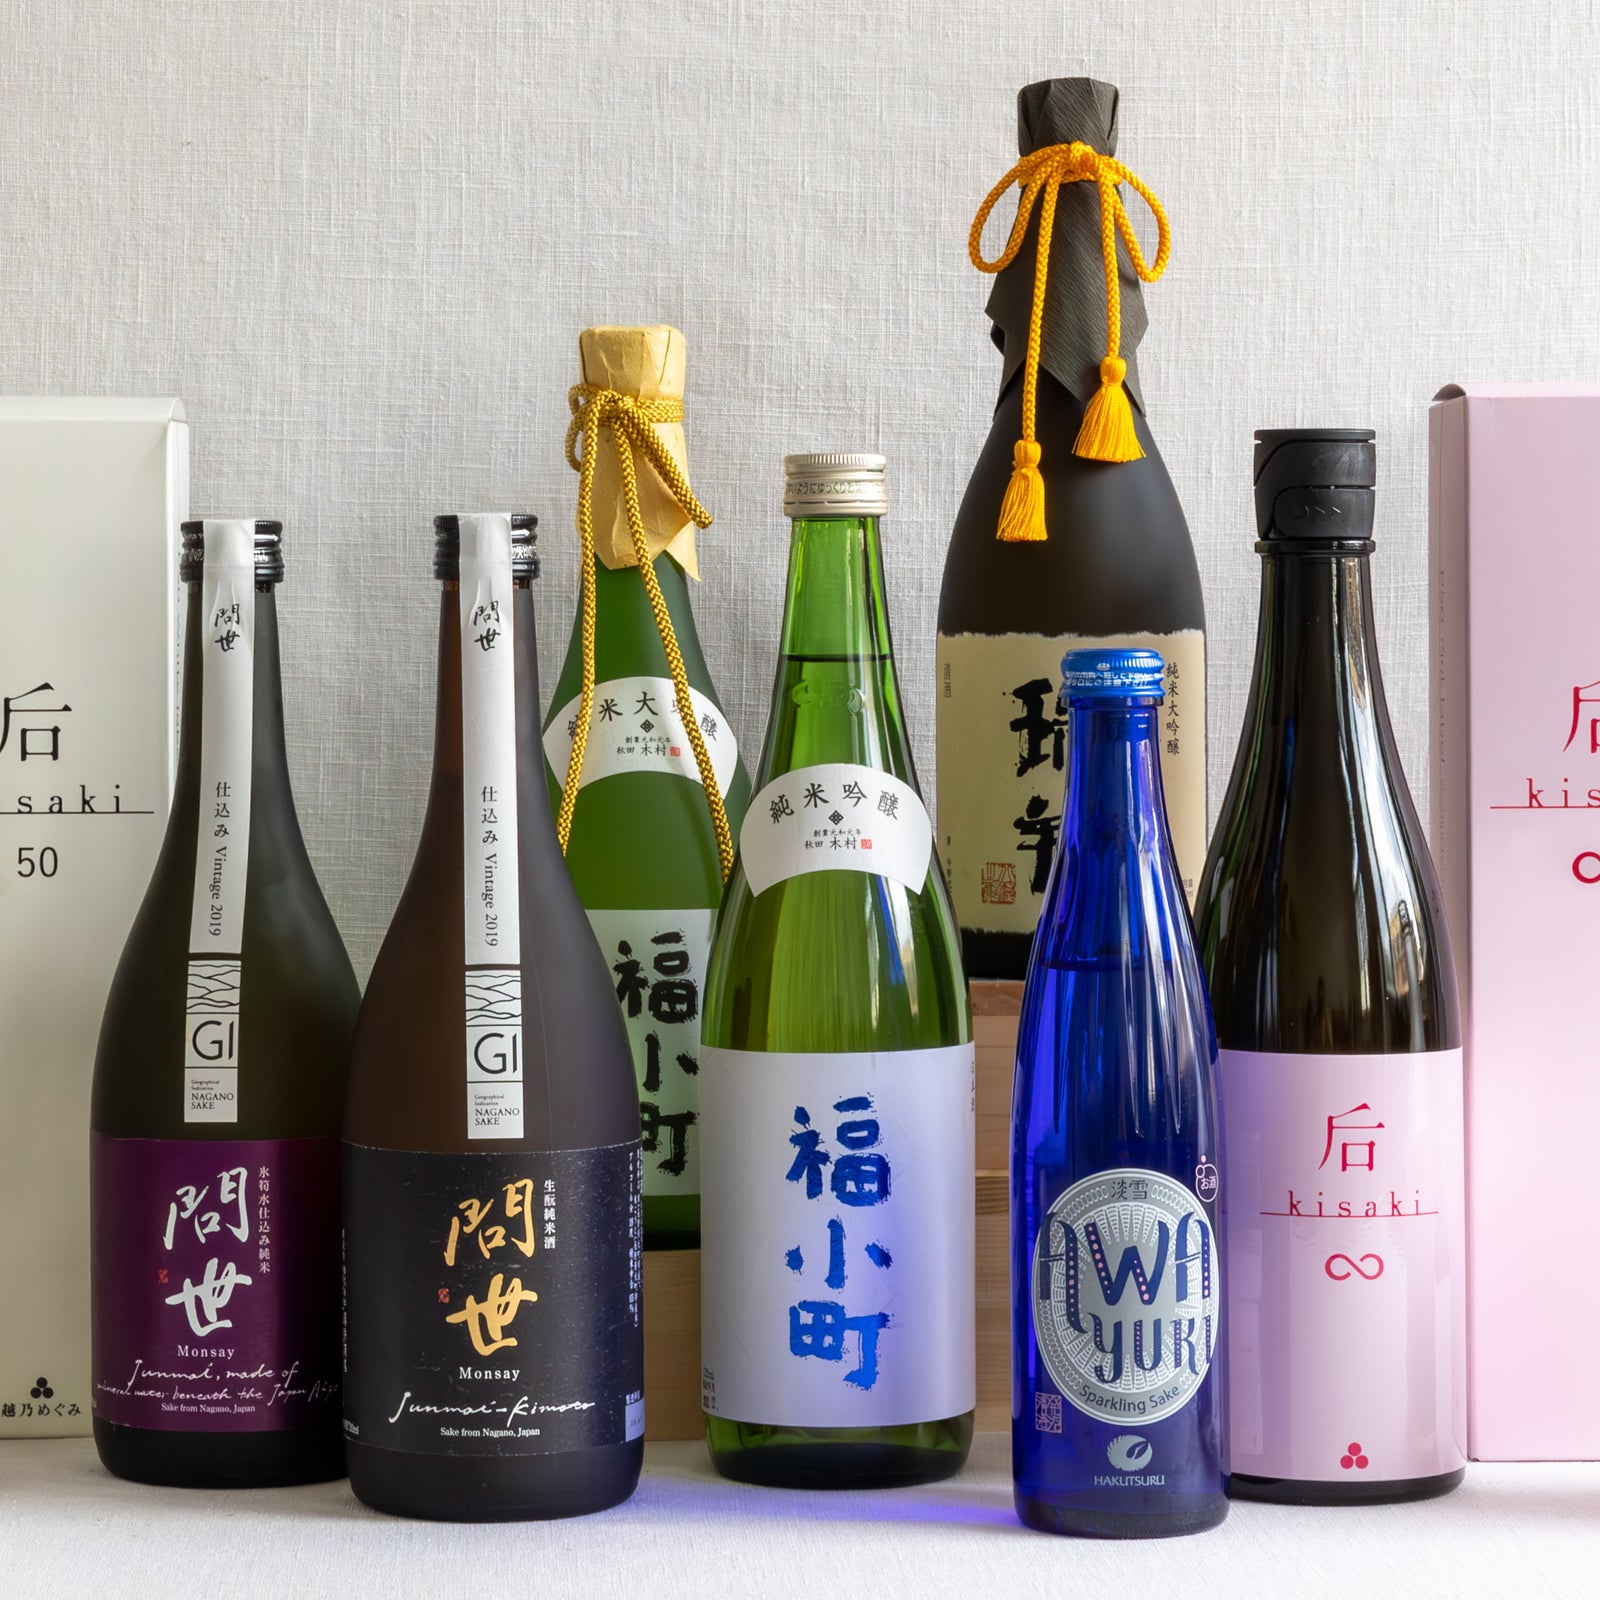 Irasshai : une nouvelle épicerie japonaise au coeur de Paris